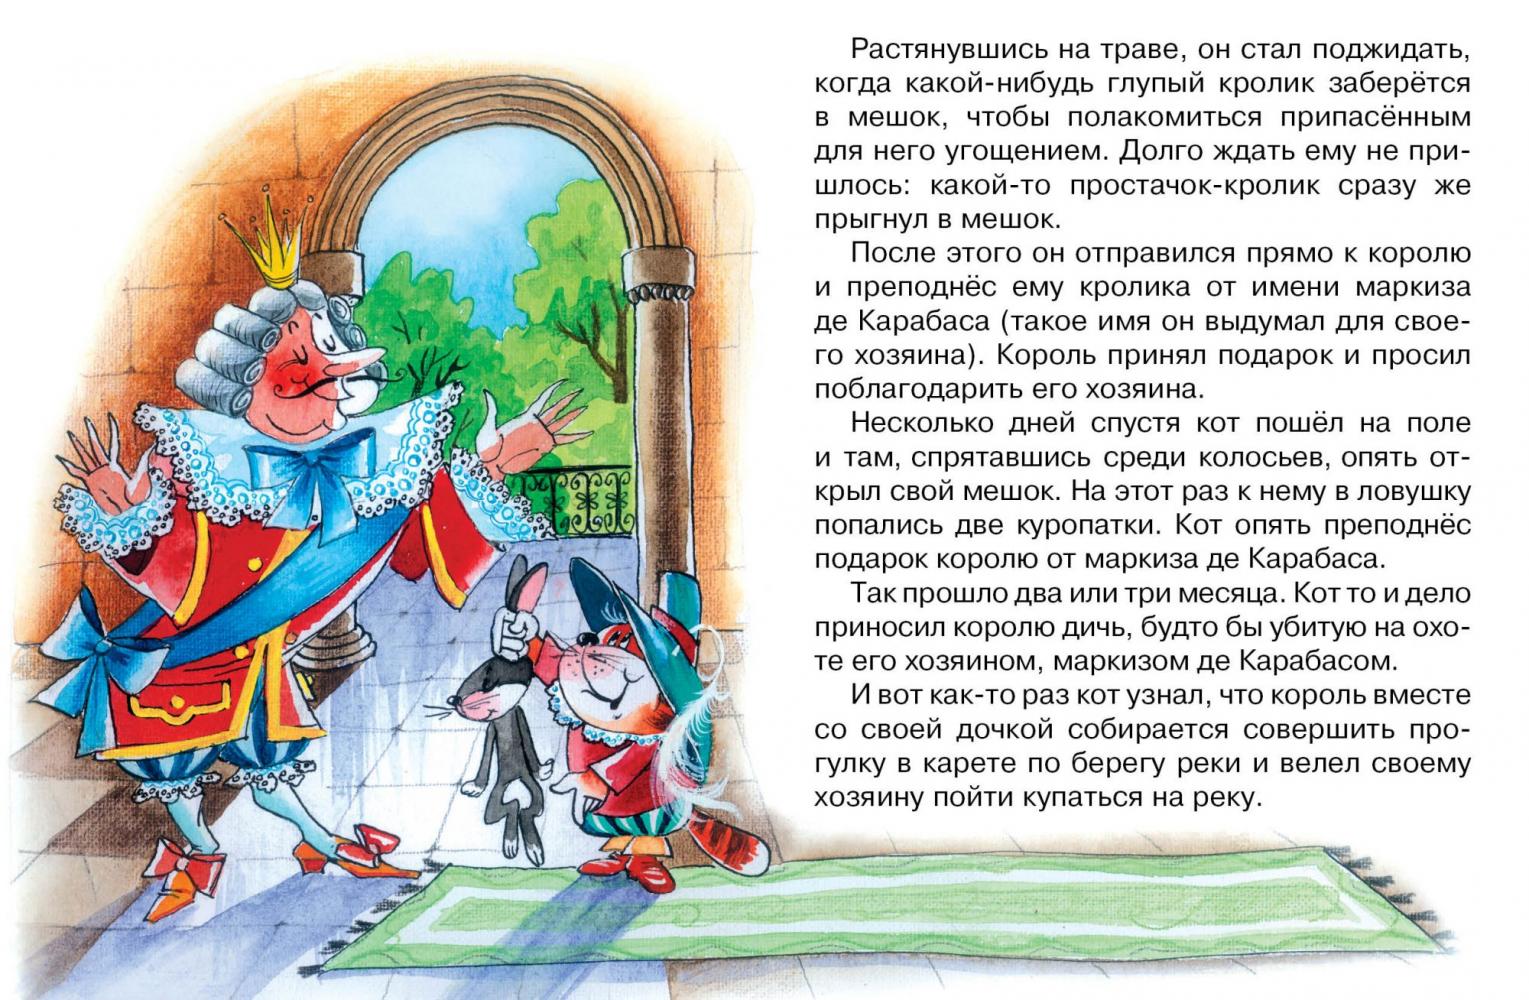 Шарль перро сказка кот в сапогах смотреть: «Кот в сапогах» (1968) — смотреть мультфильм бесплатно онлайн в хорошем качестве на портале «Культура.РФ»